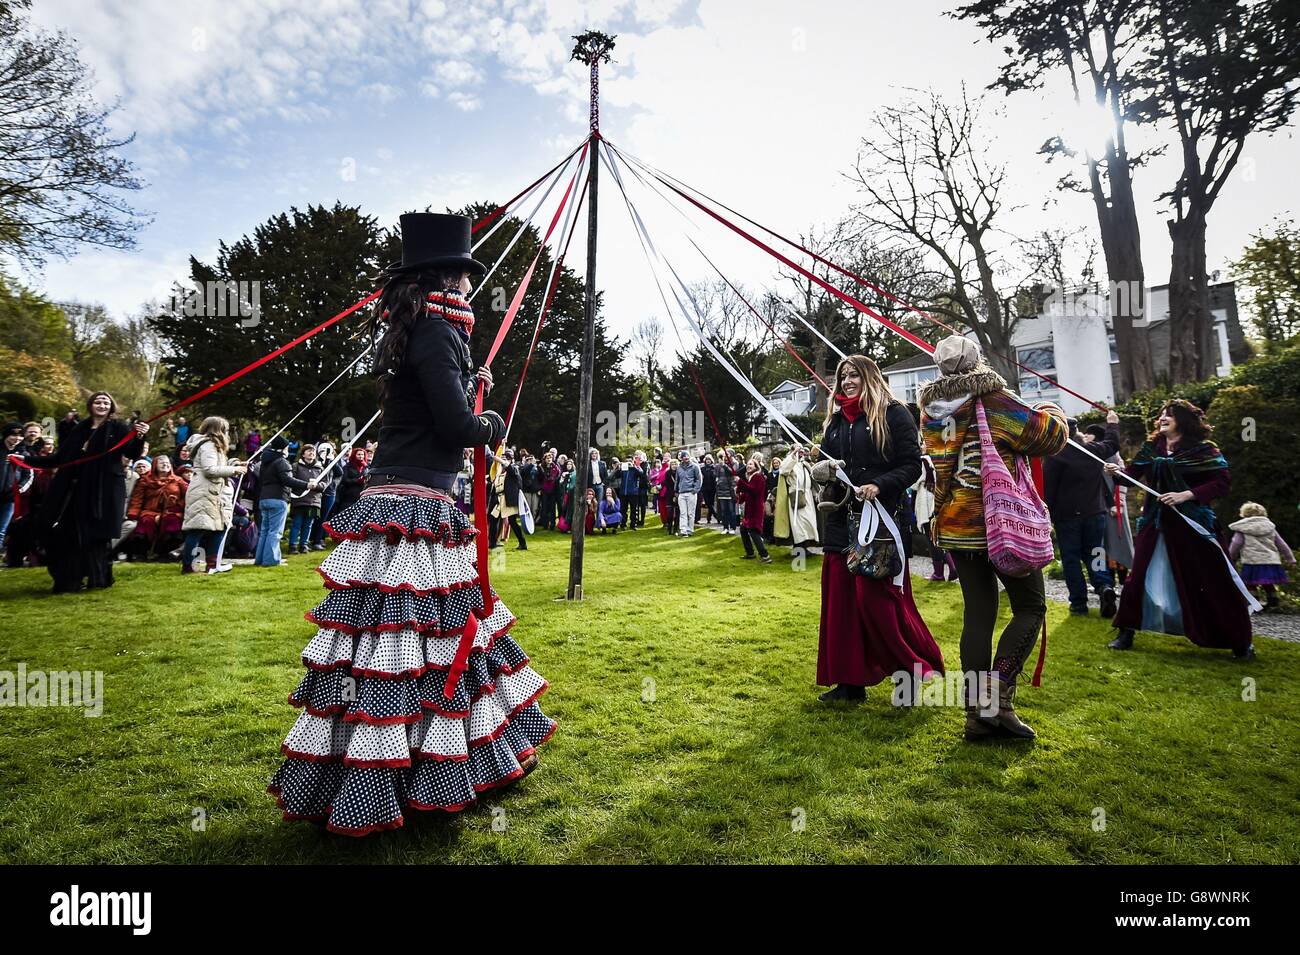 Les gens prennent part à la danse traditionnelle de la maypole dans le puits de Chalice, Glastonbury, où les festivités de Beltane ont lieu le jour de mai. Banque D'Images